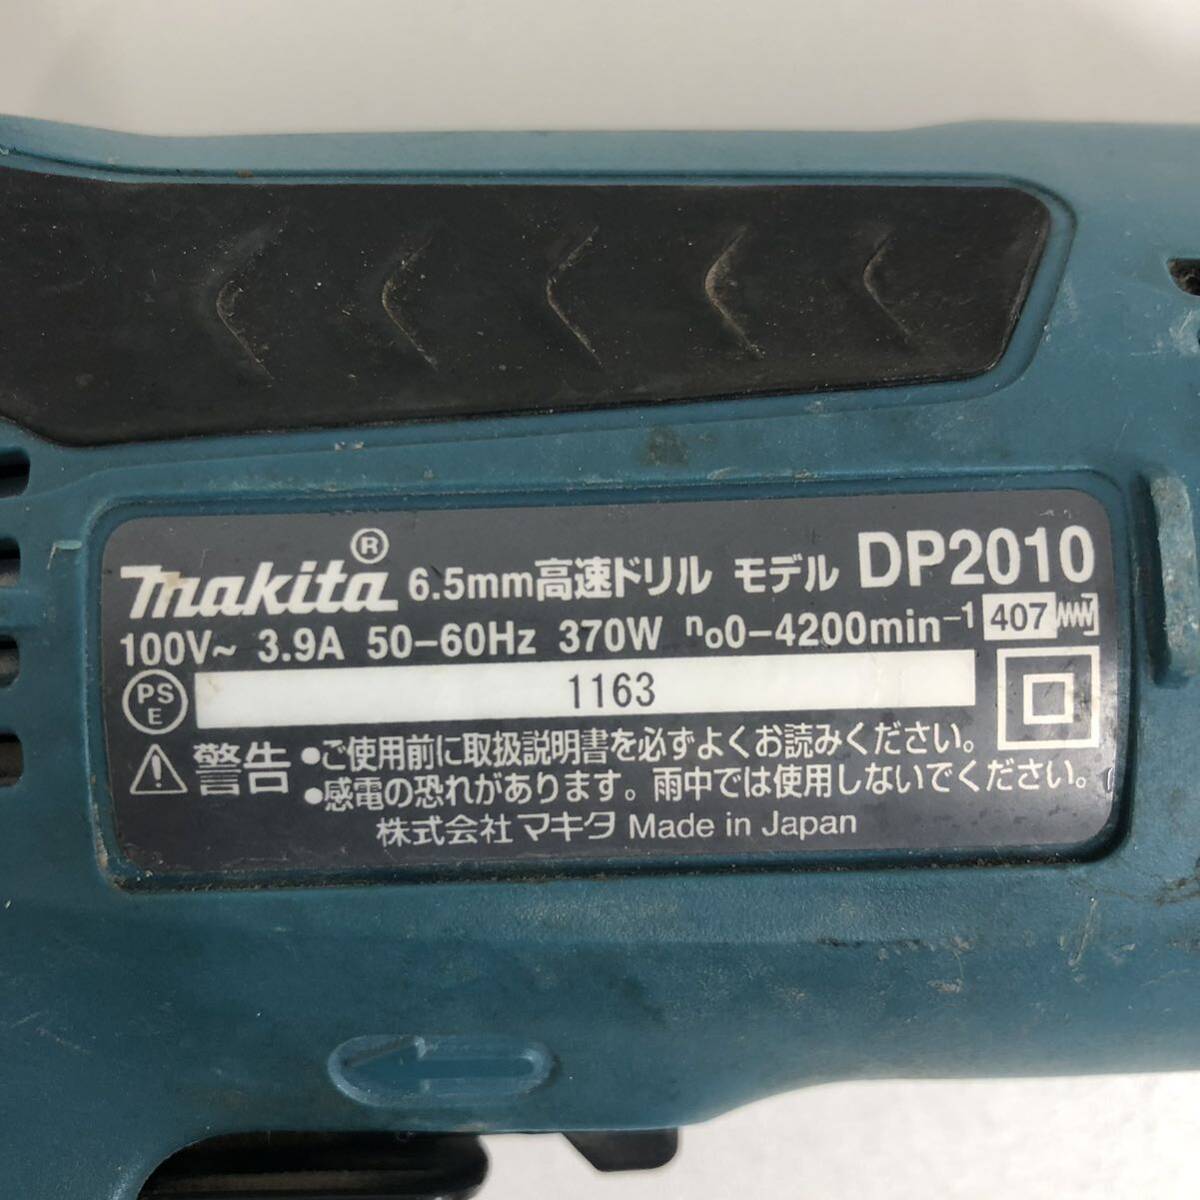 Z※ makita マキタ 6.5mm 高速ドリル DP2010 100V 電動工具 電気ドリル 通電確認済み 傷 汚れ 有りの画像4